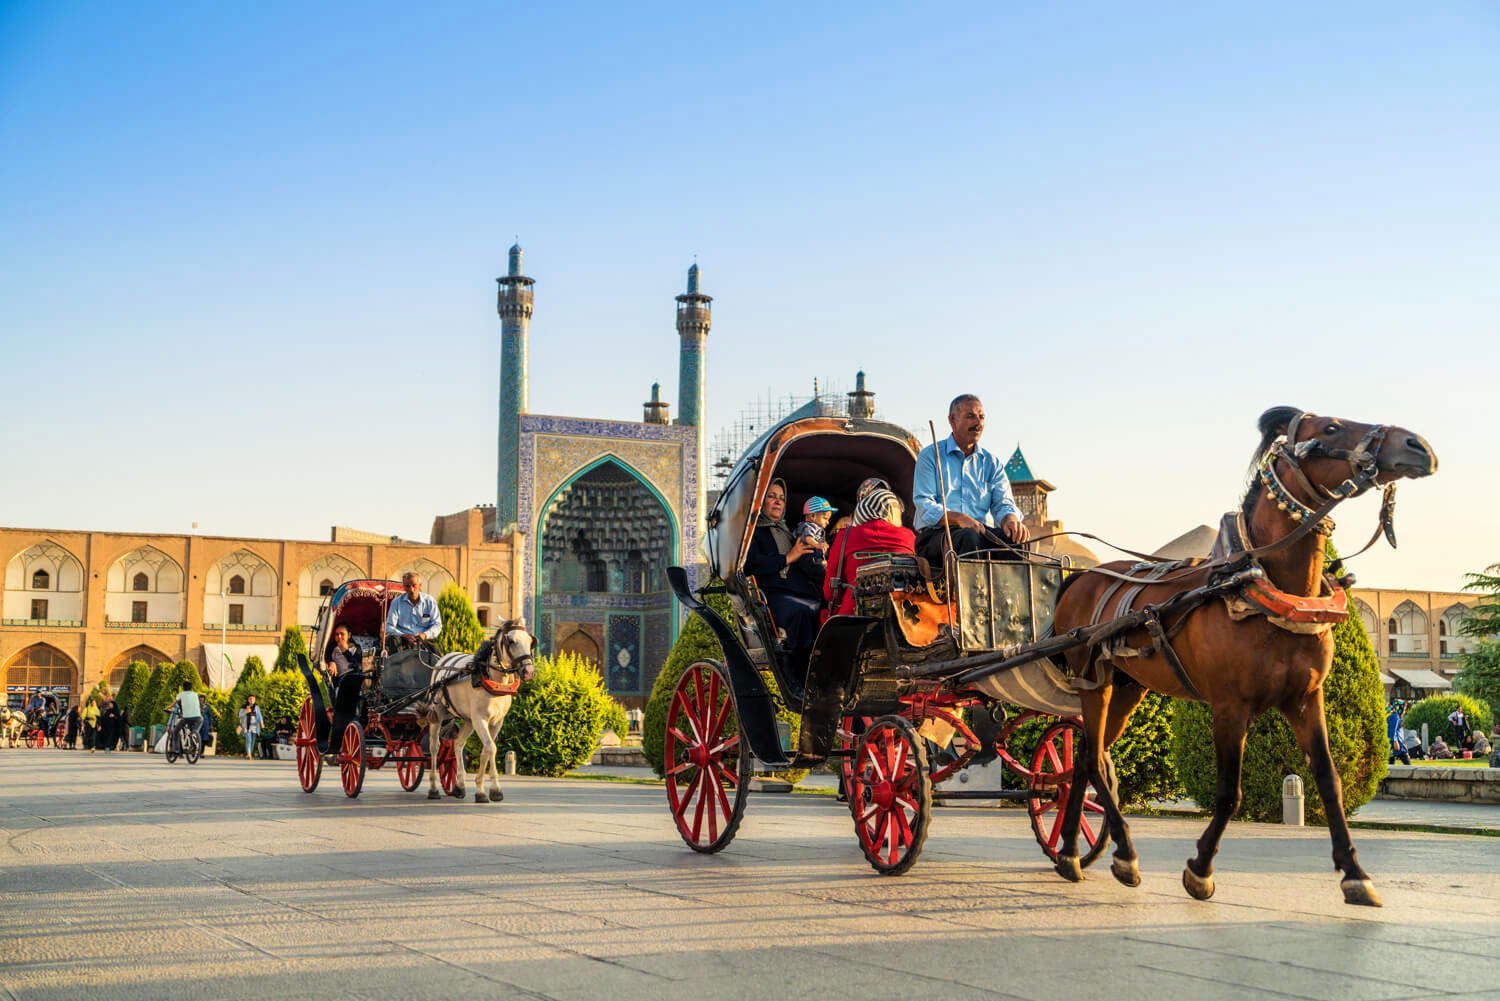 یک شب اقامت رایگان به مسافران در اصفهان| ماجرا چیست؟

